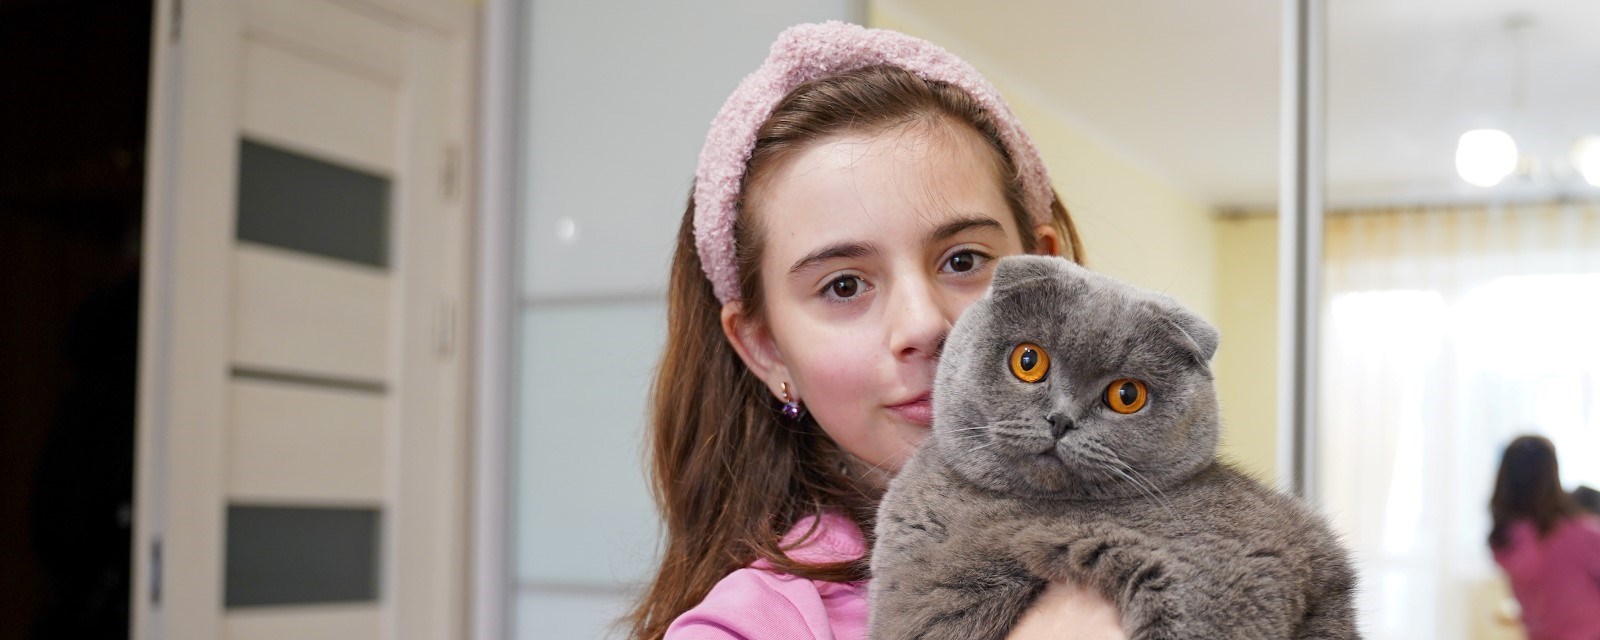 Jente holder en katt med gule øyne i armene